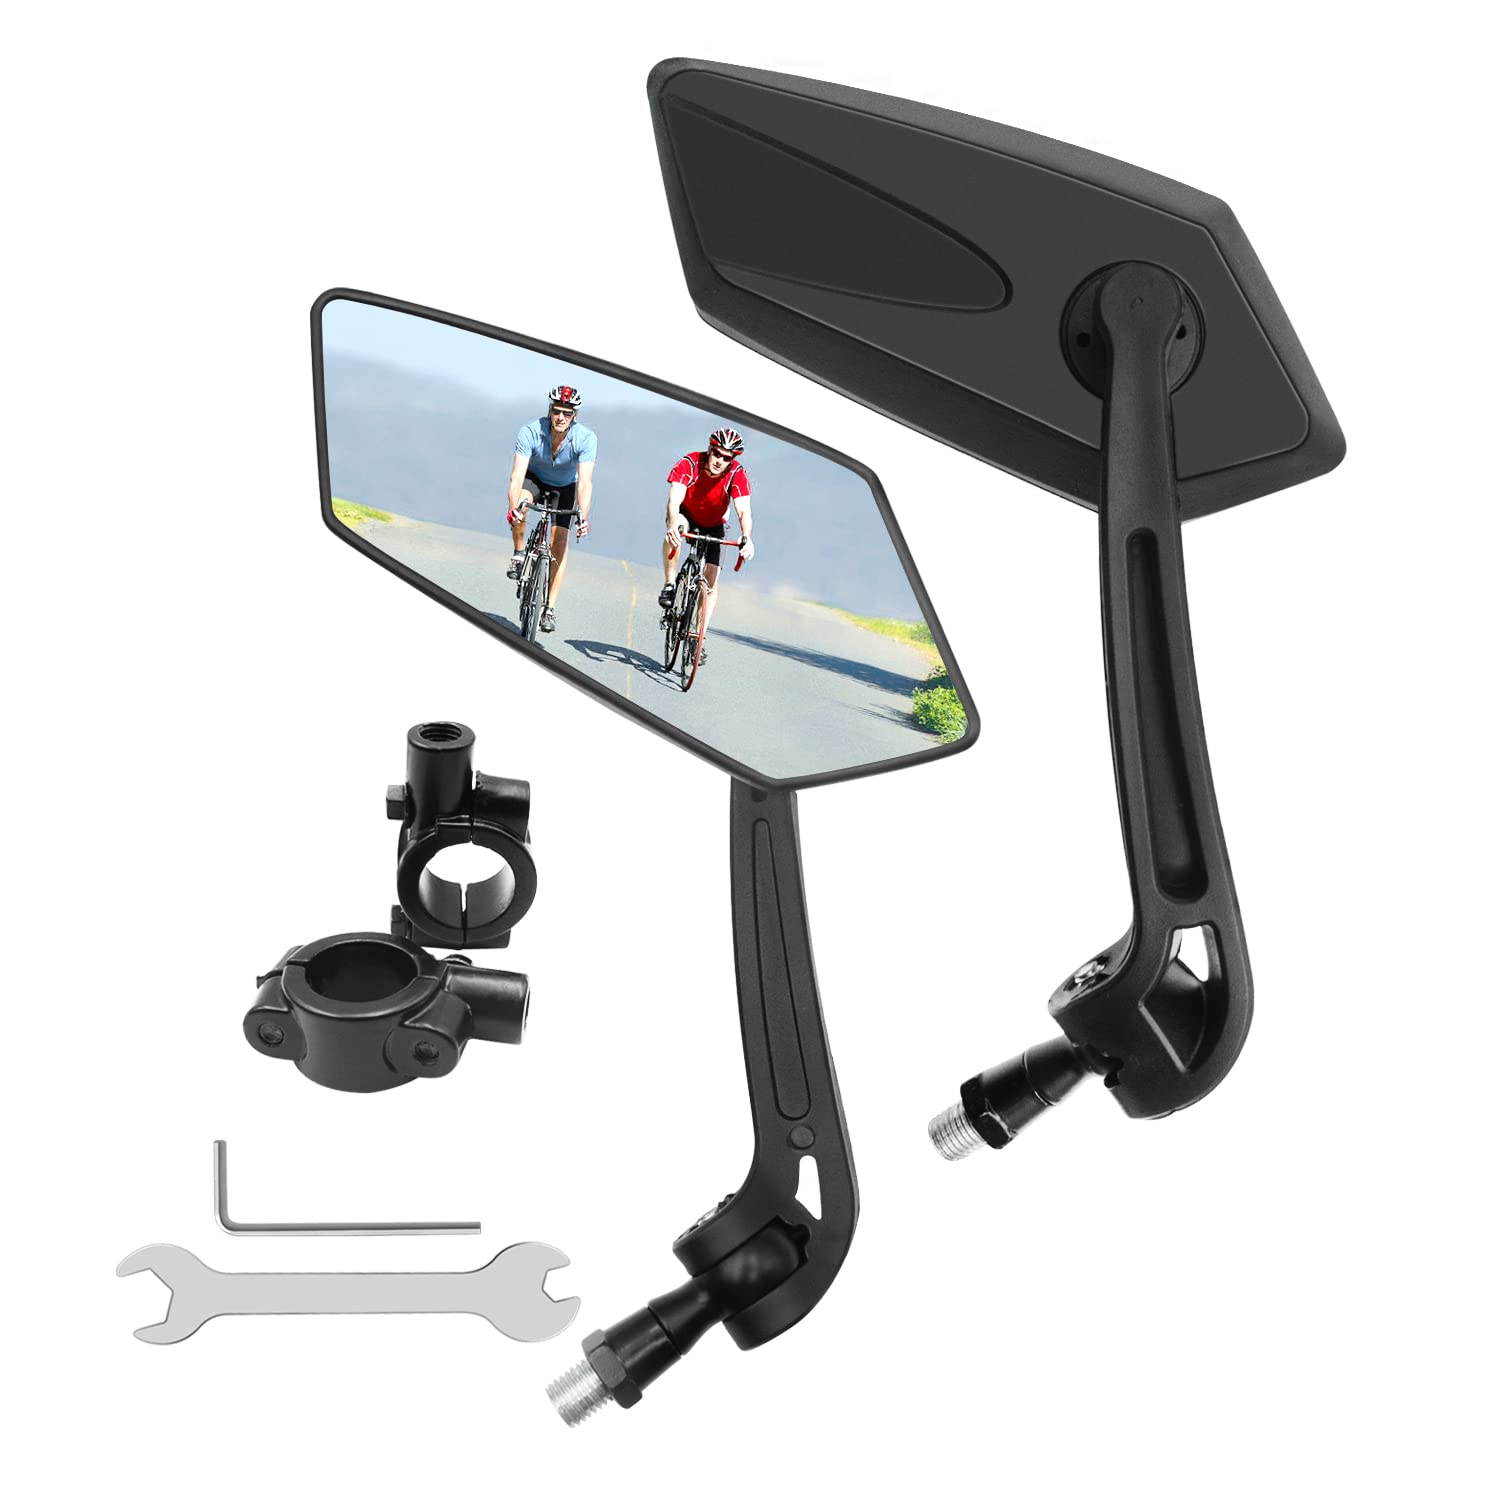 Fahrradspiegel HD, 2 Stück Universal Fahrradrückspiegel,360 Grad drehbar Fahrradspiegel Klappbar,Fahrradspiegel für e-bike,Rückspiegel Fahrrad kompatibel mit allen Modellen(links + rechts) von SUPRBIRD